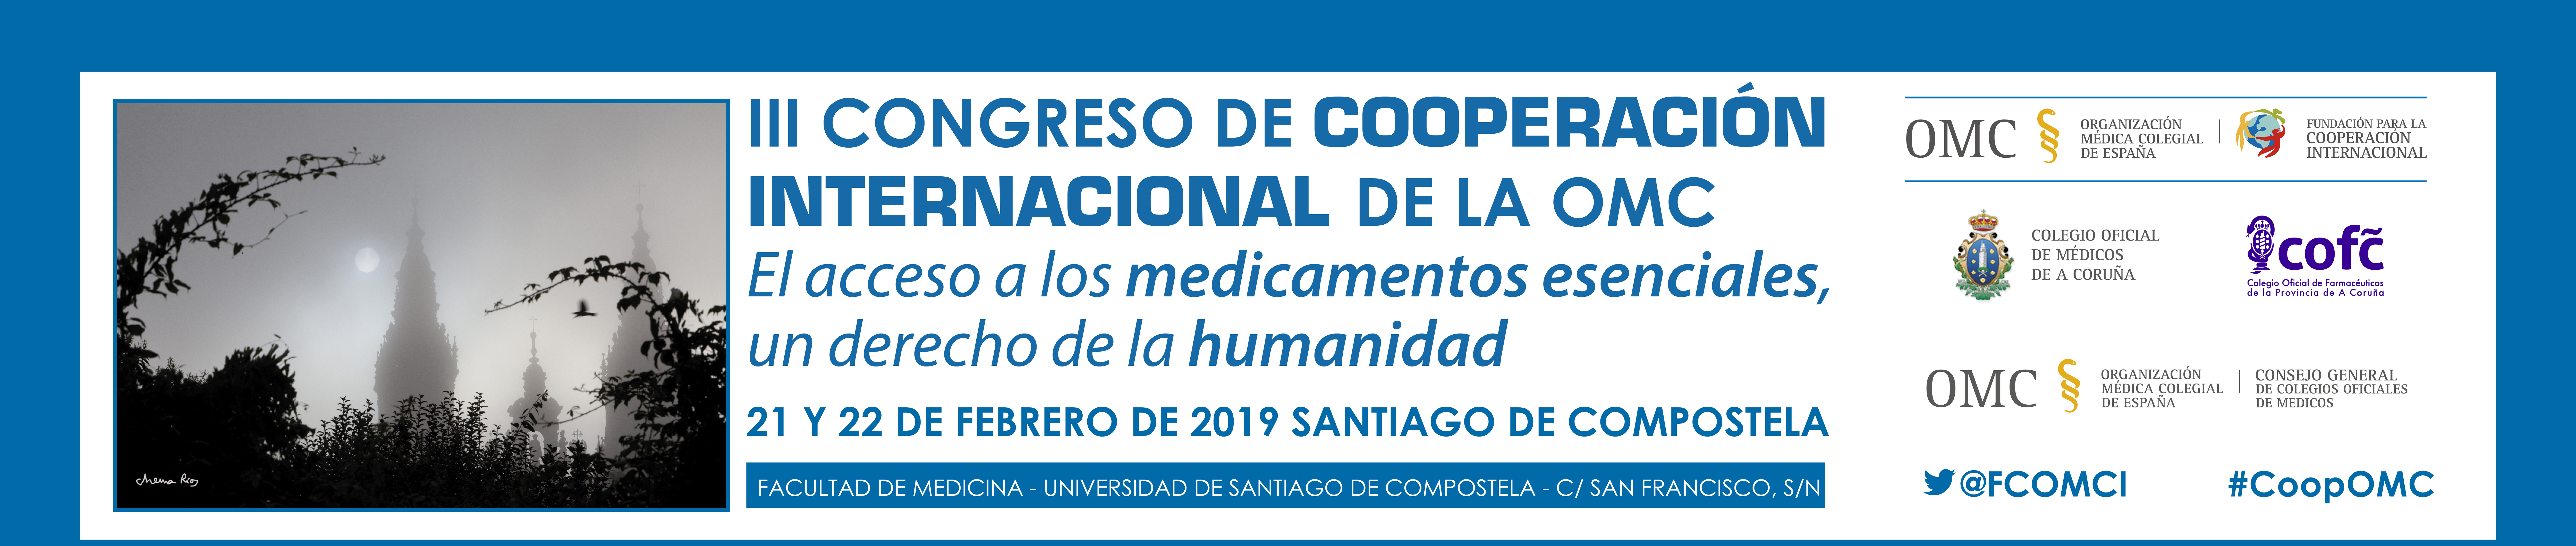 II Congreso de Cooperación Internacional